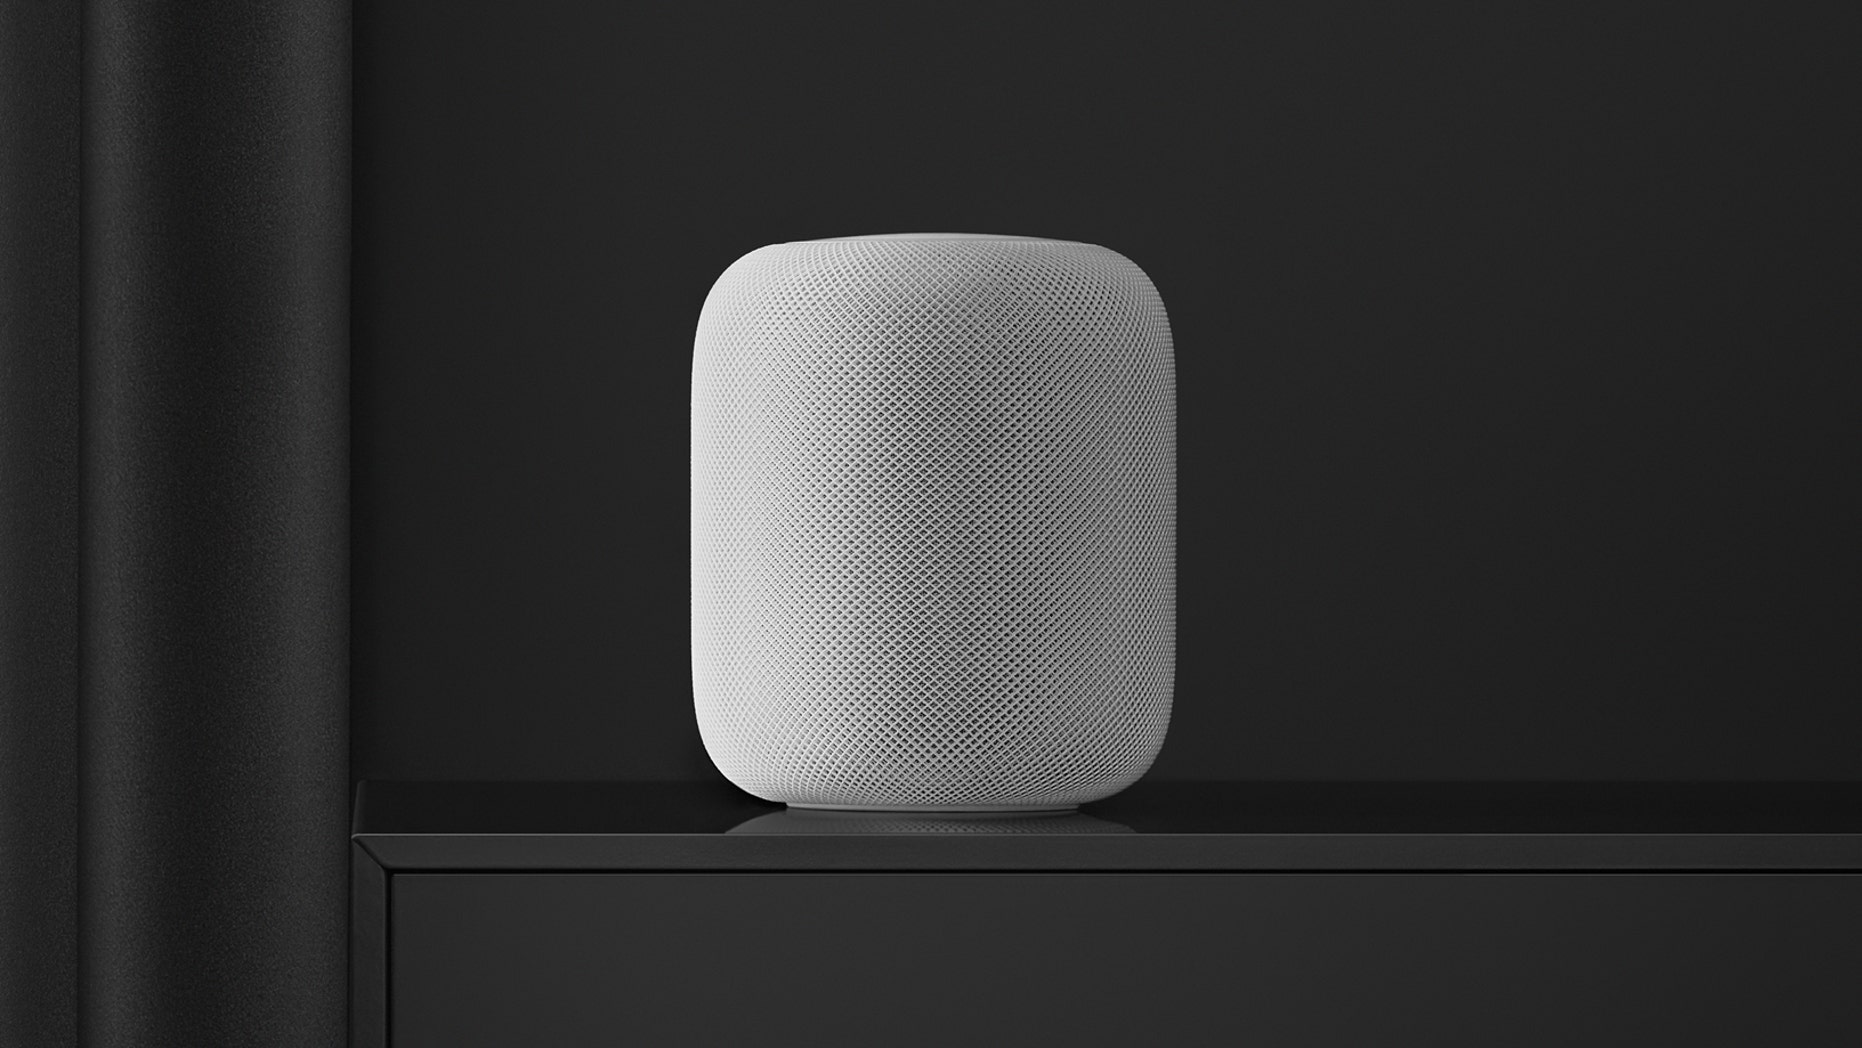 Apple’s HomePod struggles in crowded smart speaker market